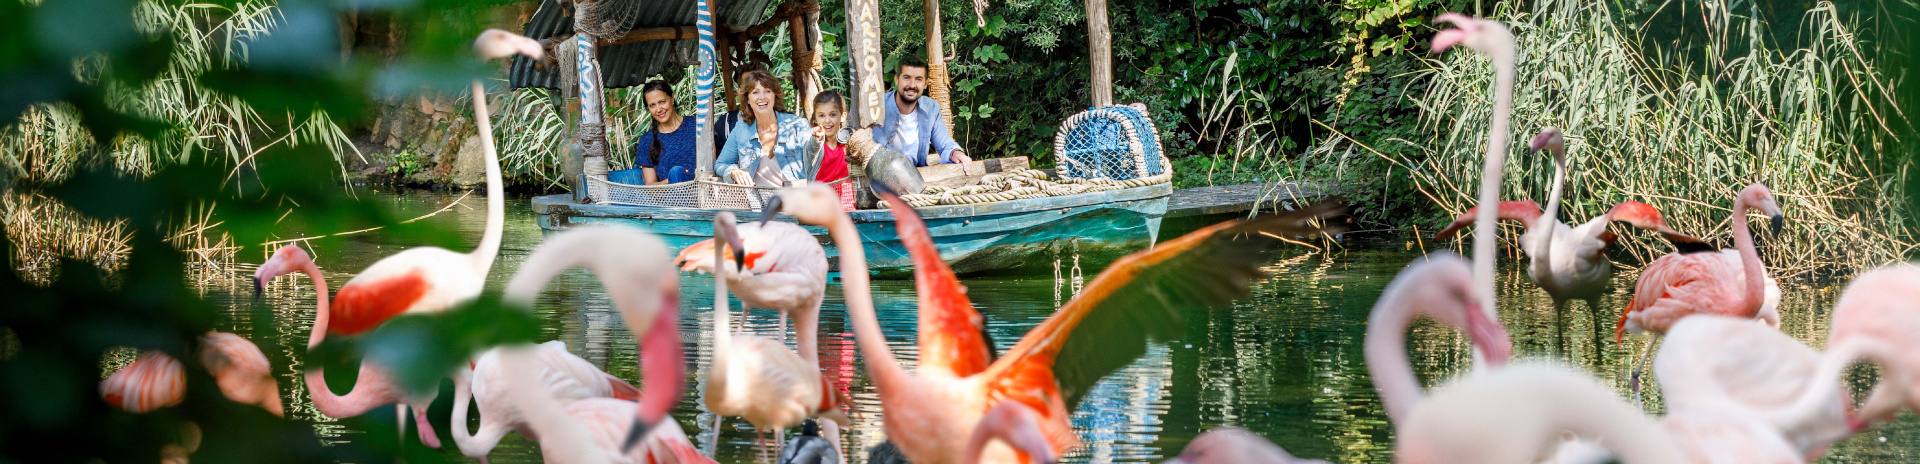 Ein Boot gleitet vor einer Gruppe Flamingos über einen afrikanisch-inspirierten Flusslauf.